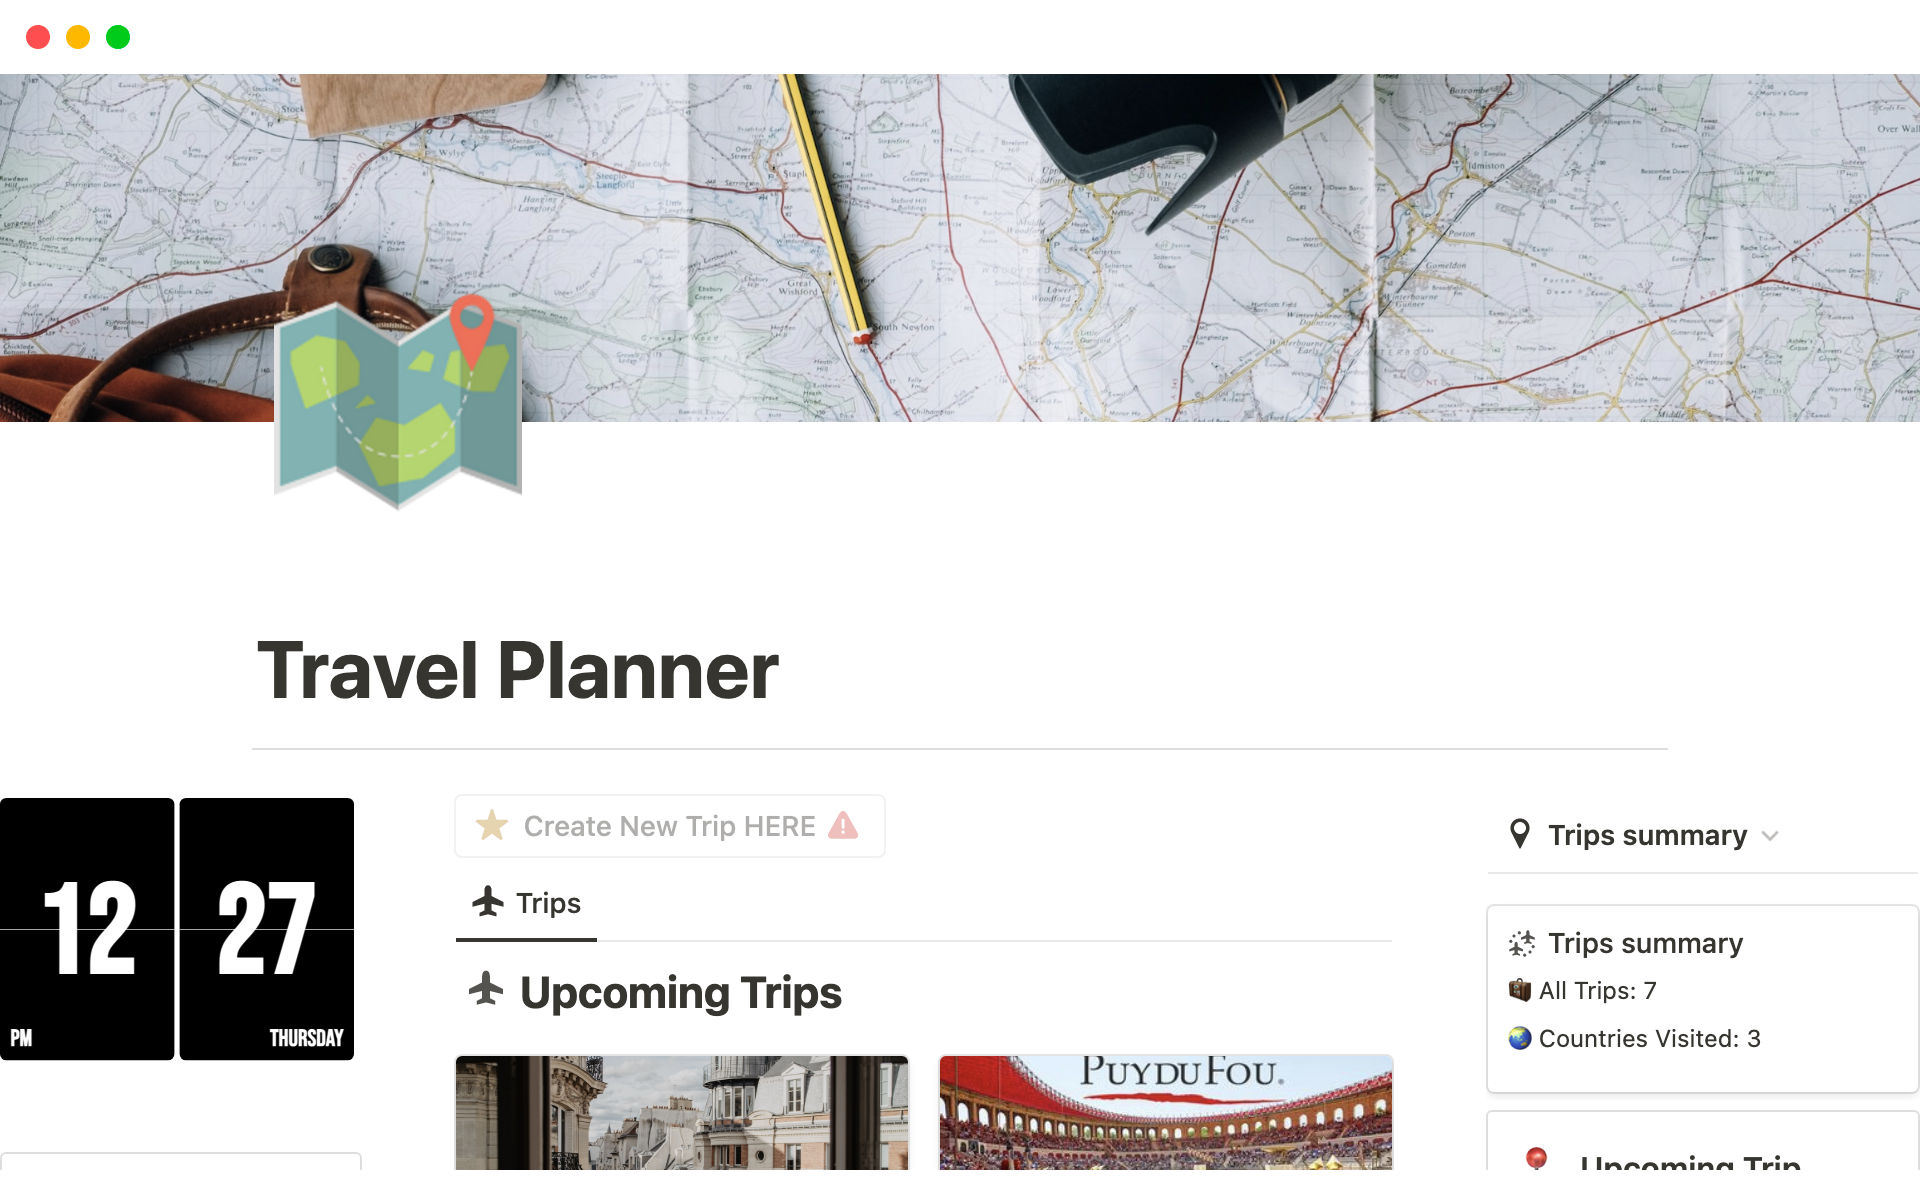 En förhandsgranskning av mallen för Ultimate Travel Planner